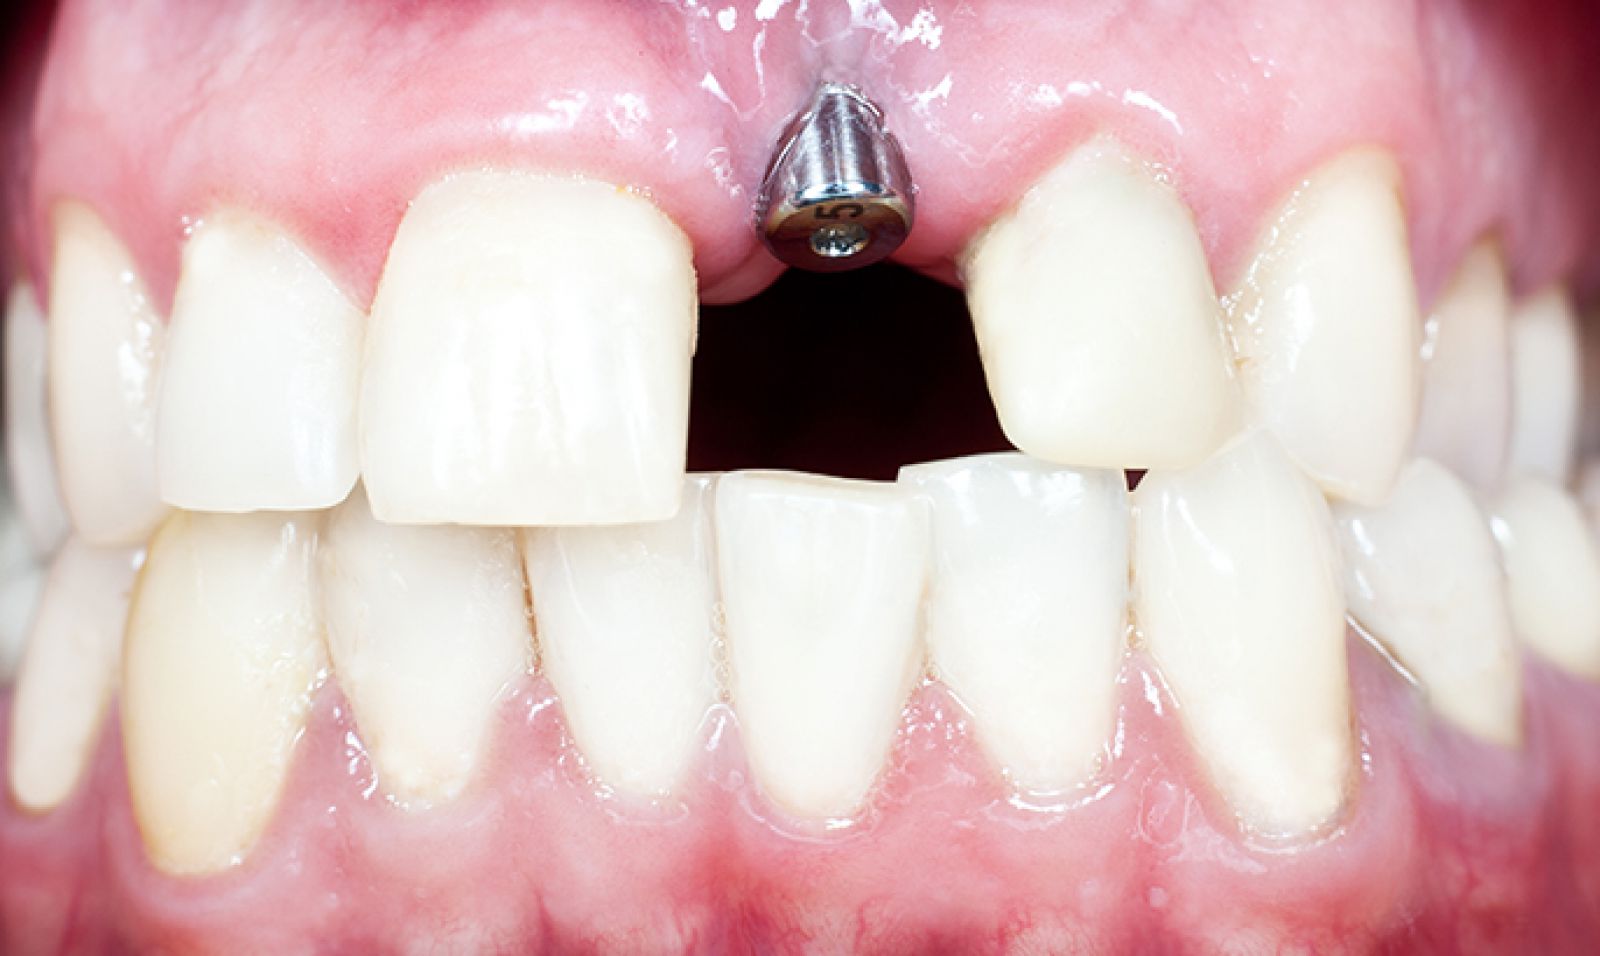 Dental implants: Dental bonding